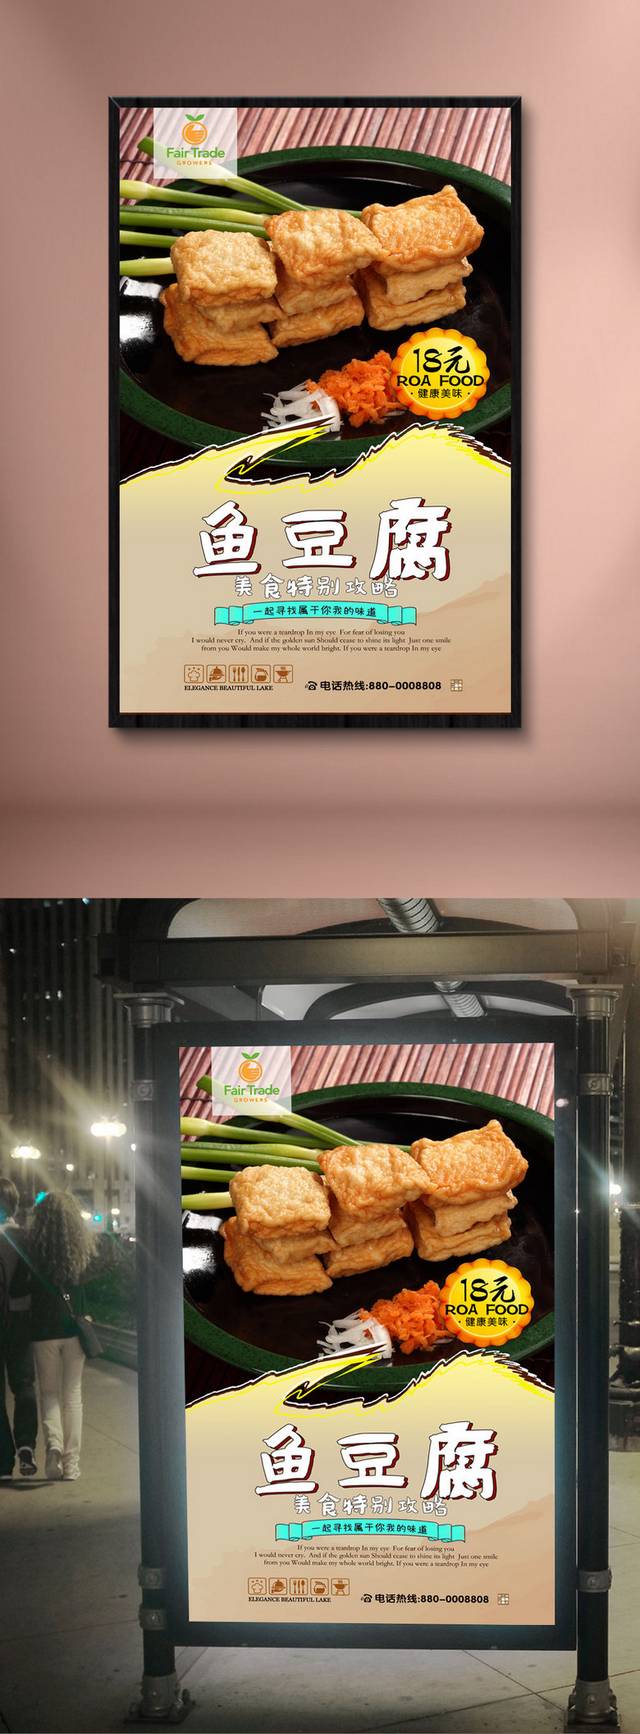 鱼豆腐饮食海报设计